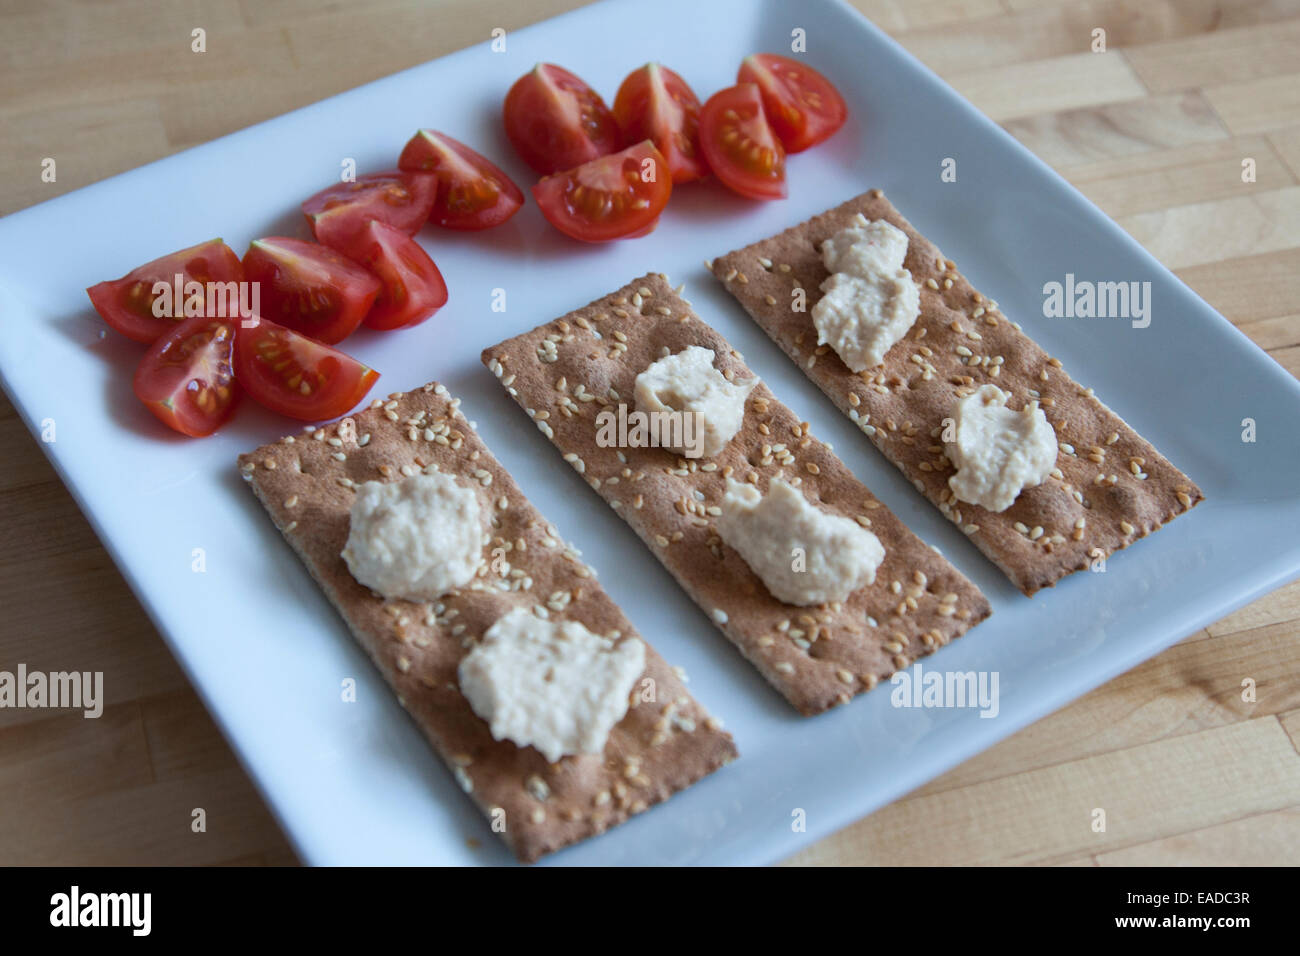 Einfachen Snack von ak-Mak Cracker, Humus und Cherry Tomaten auf einer quadratischen Platte. Stockfoto